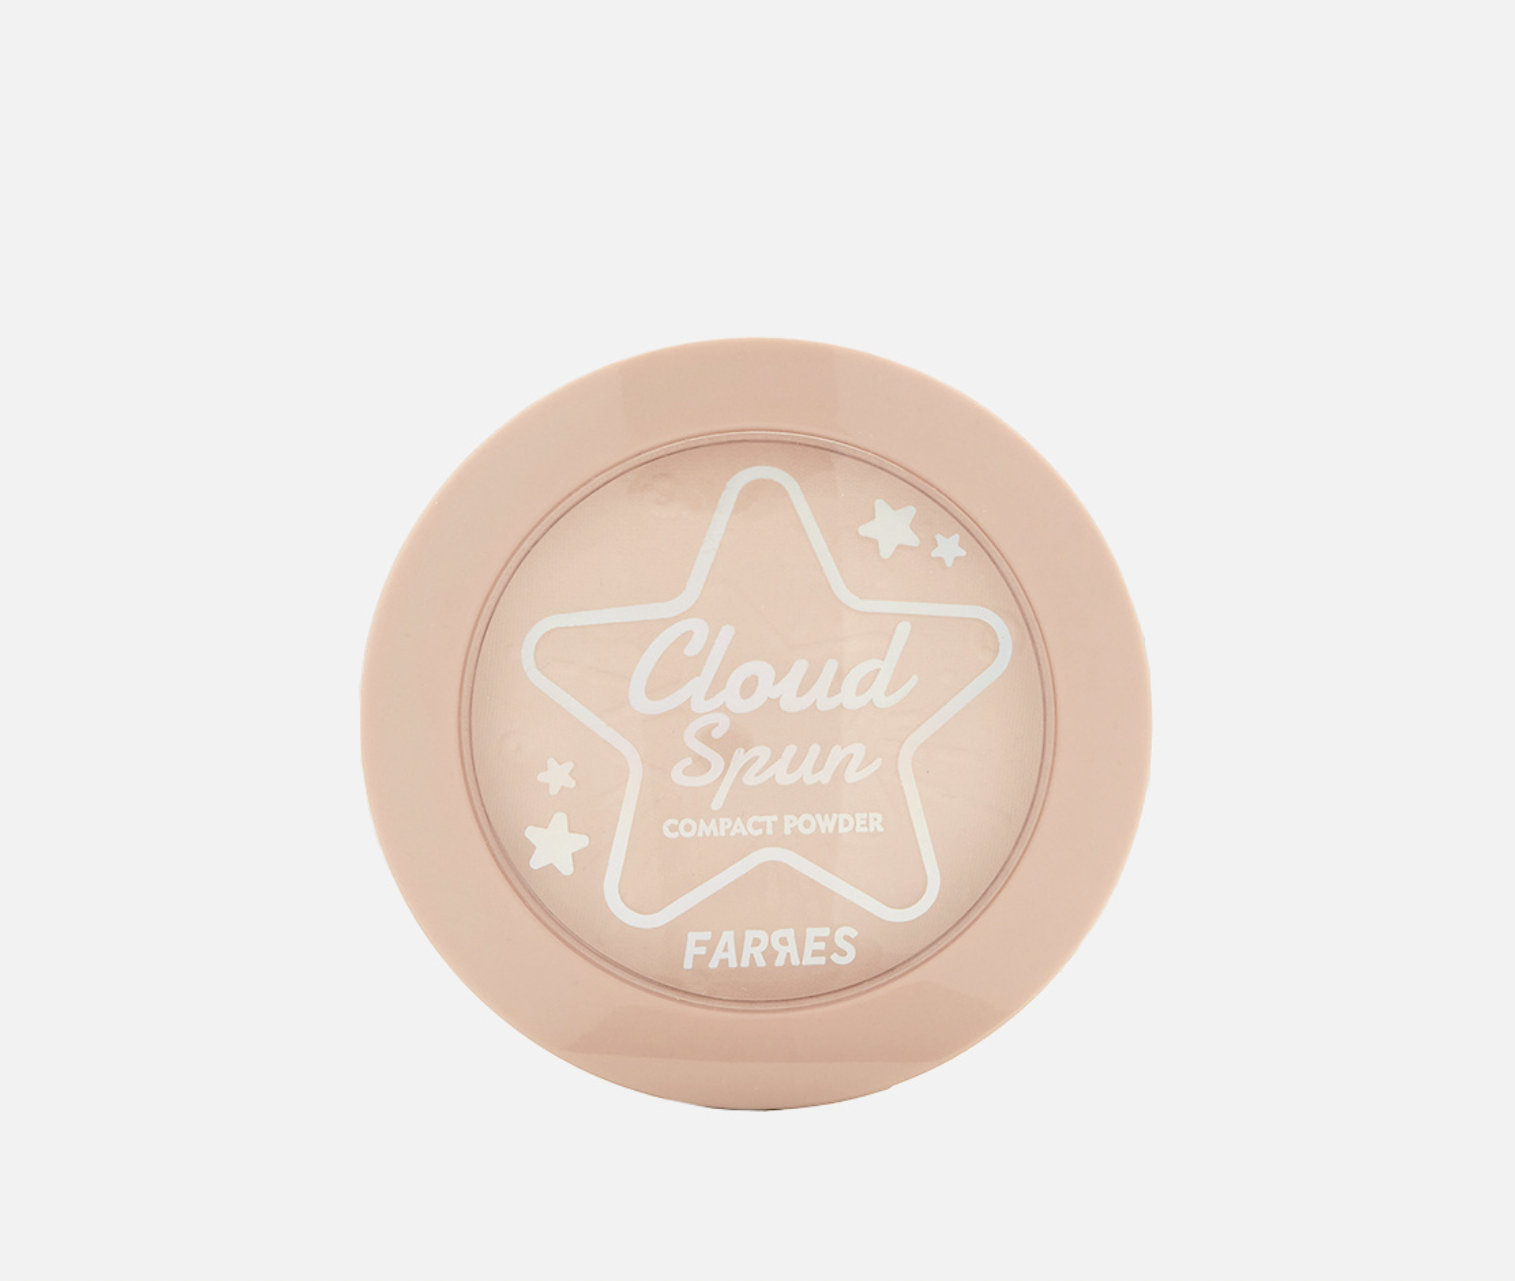   / Farres -     Cloud Spun 3026-02, 8,6 